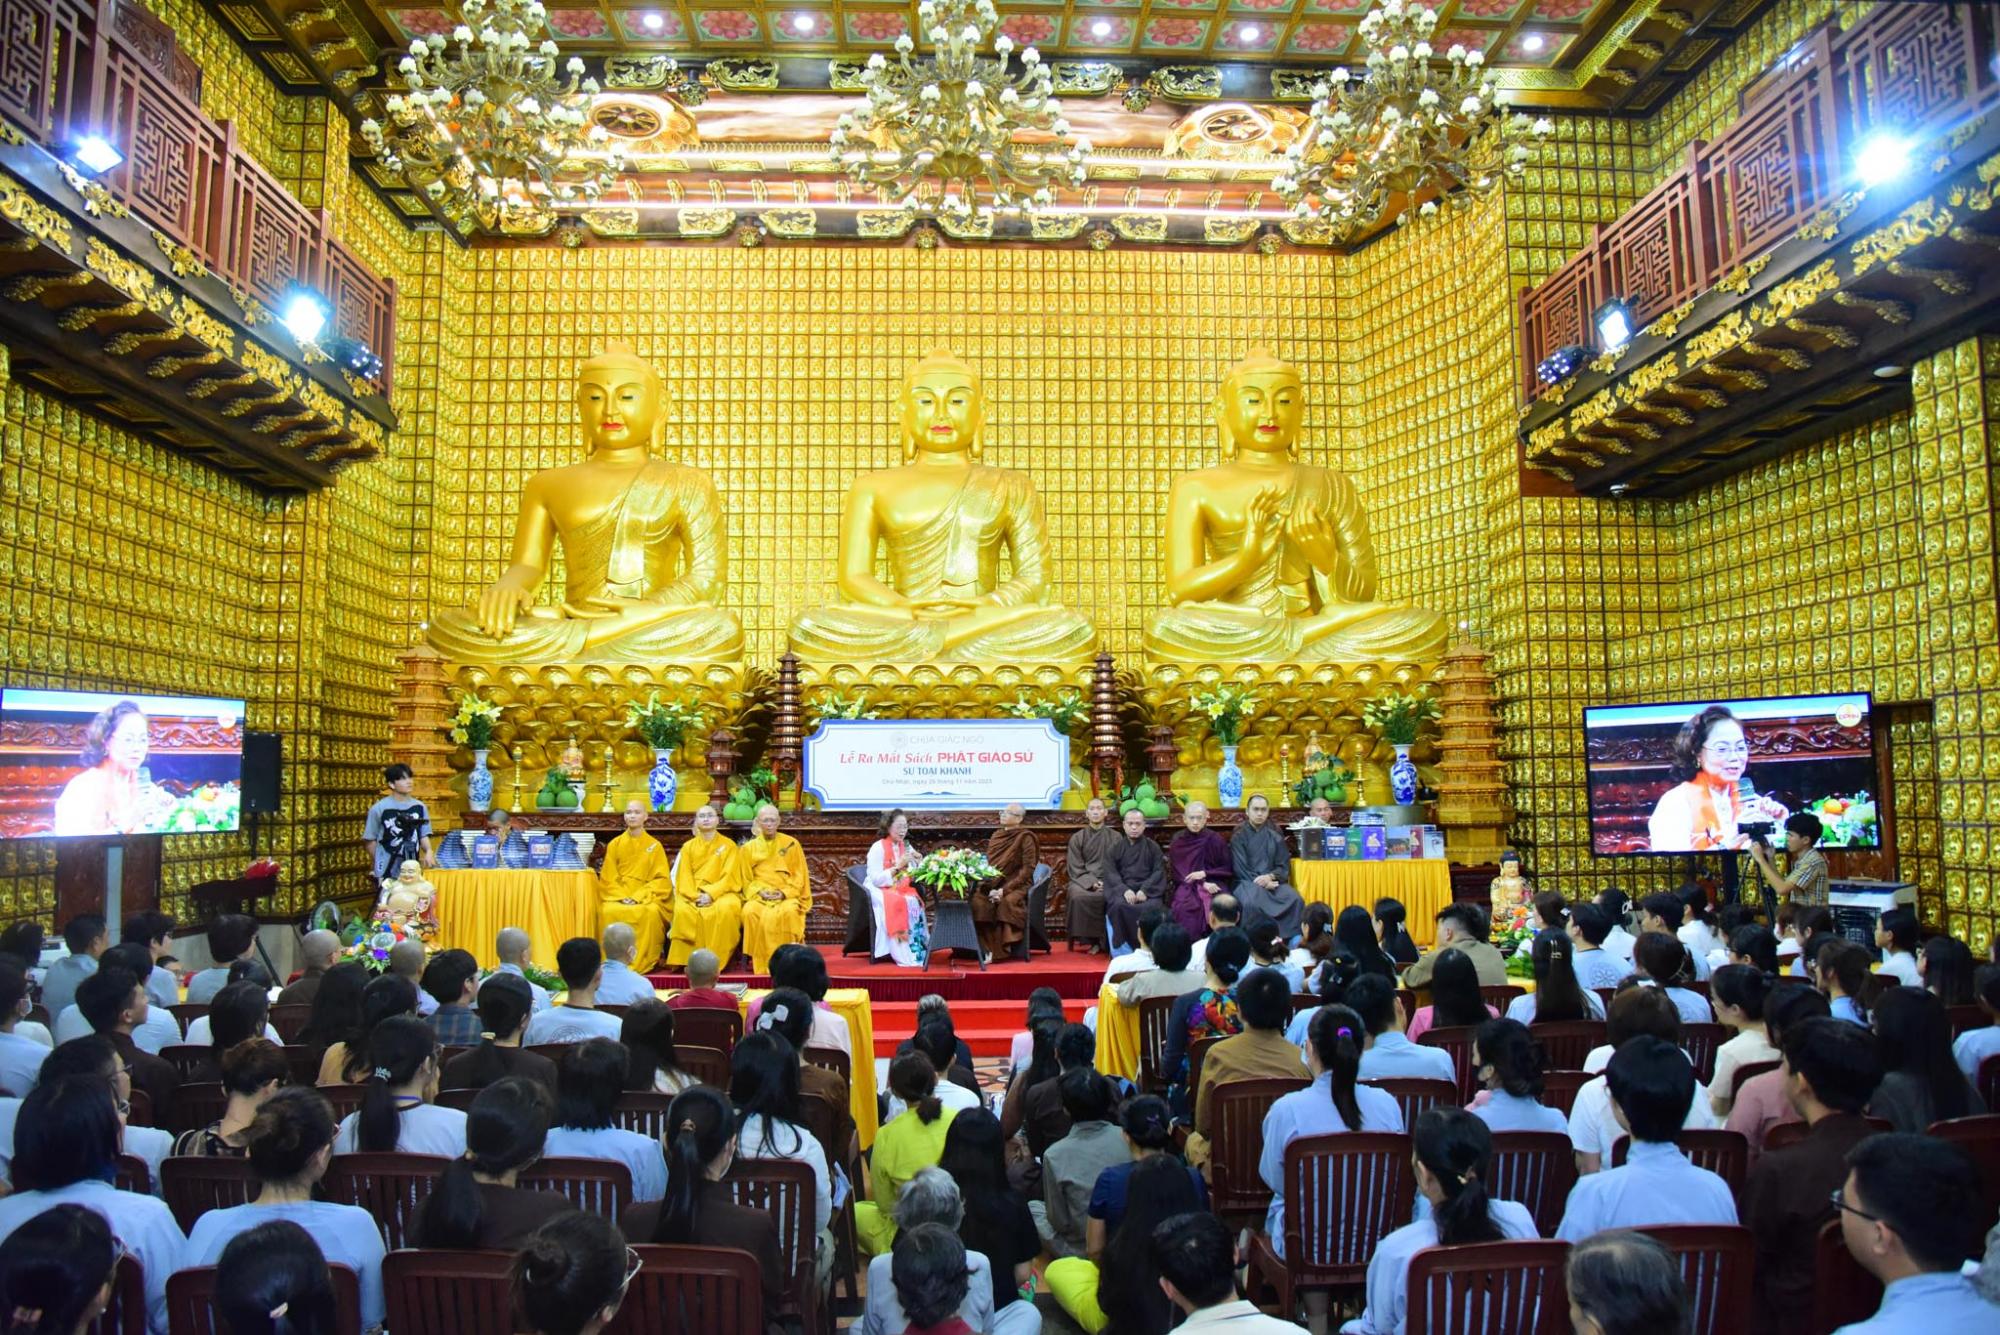 Ra mắt sách Phật giáo sử của TT. Toại Khanh